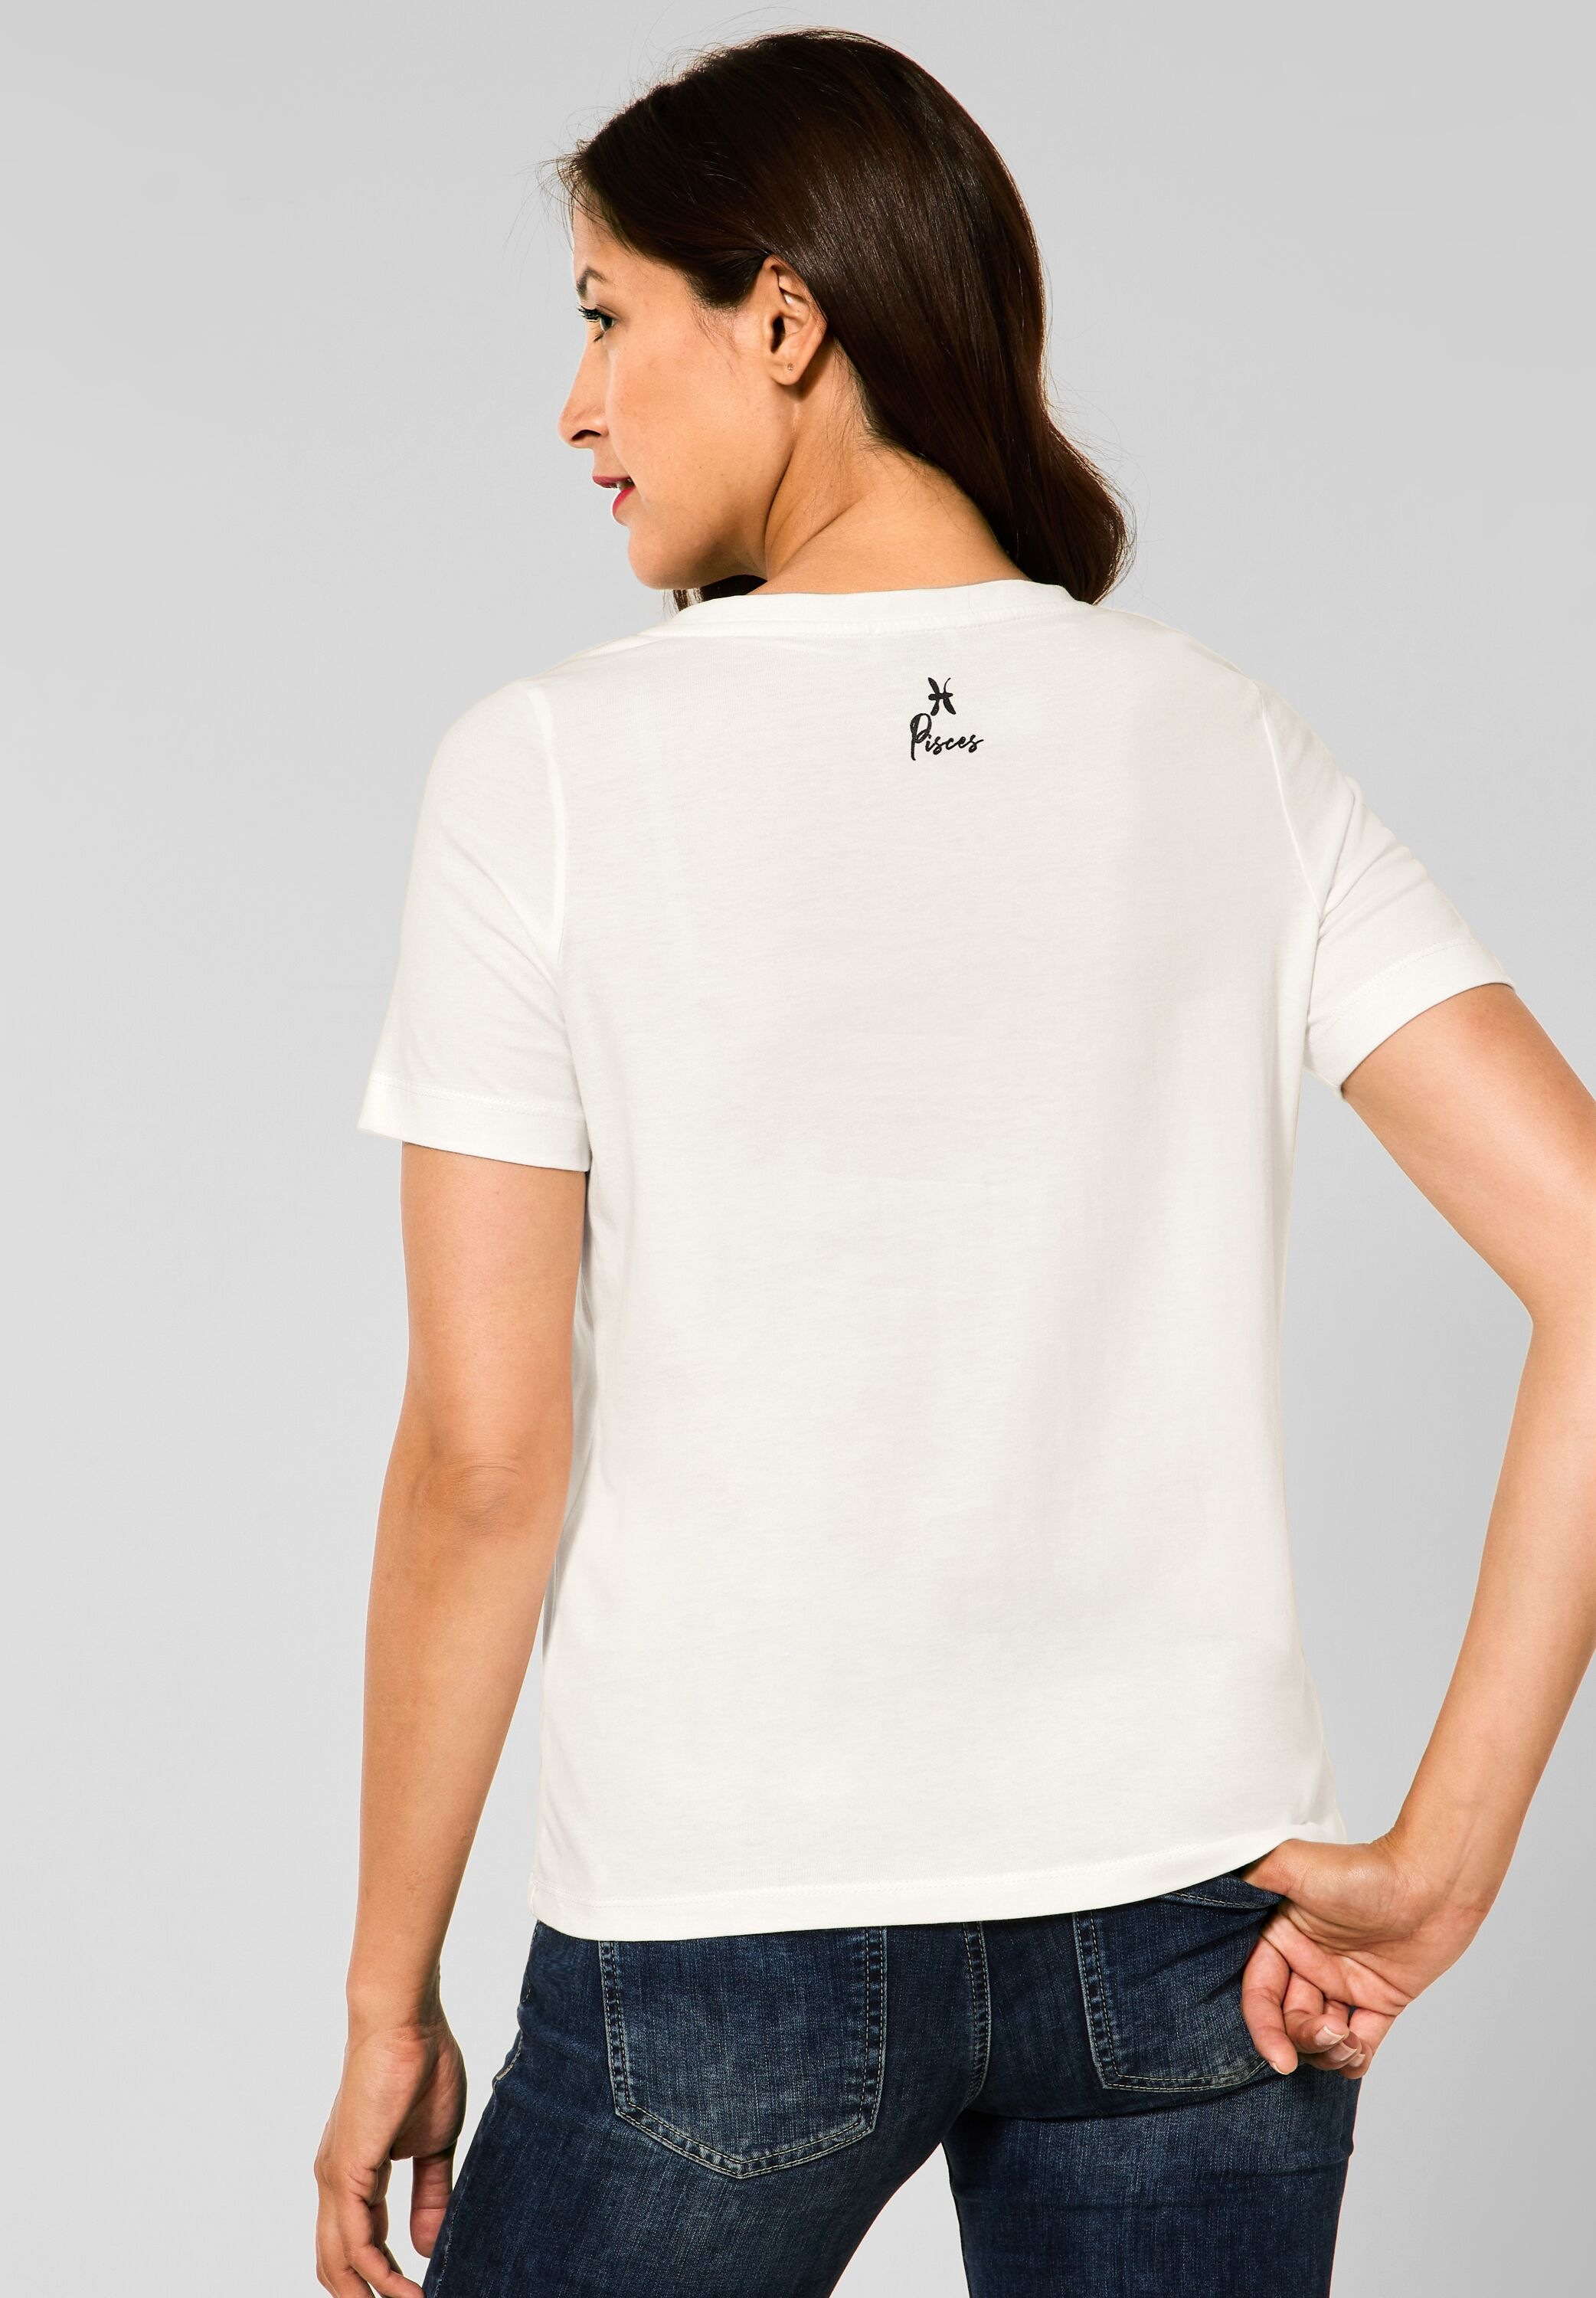 mit | ONE T-Shirt, BAUR STREET für Frontprint kaufen